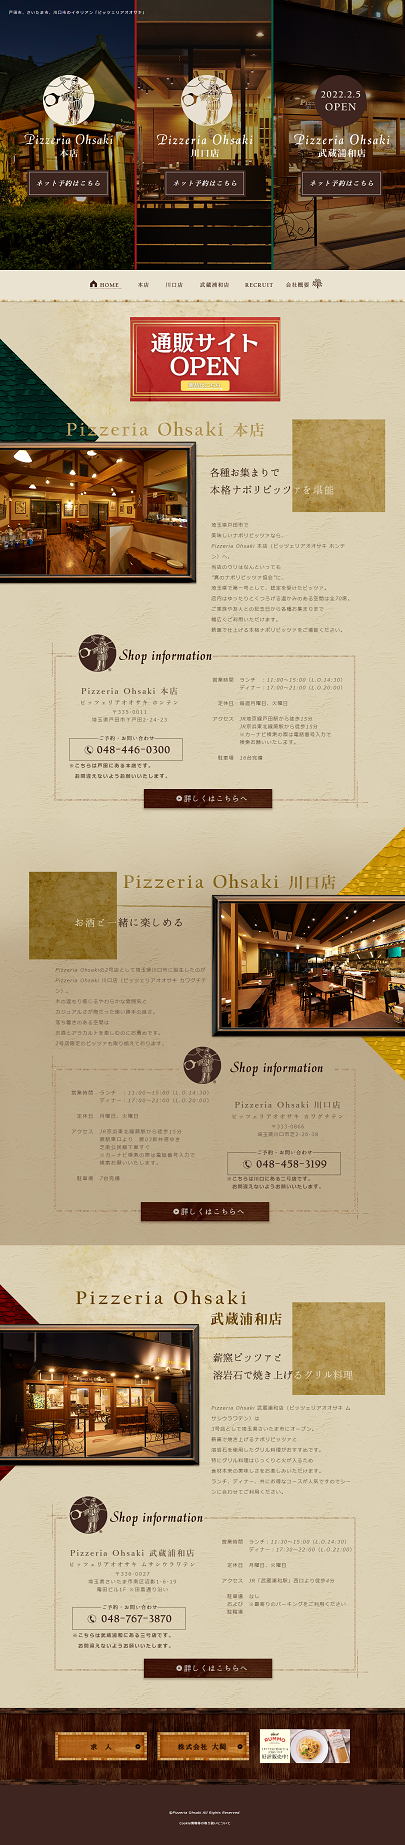 Pizzeria Ohsaki 本店